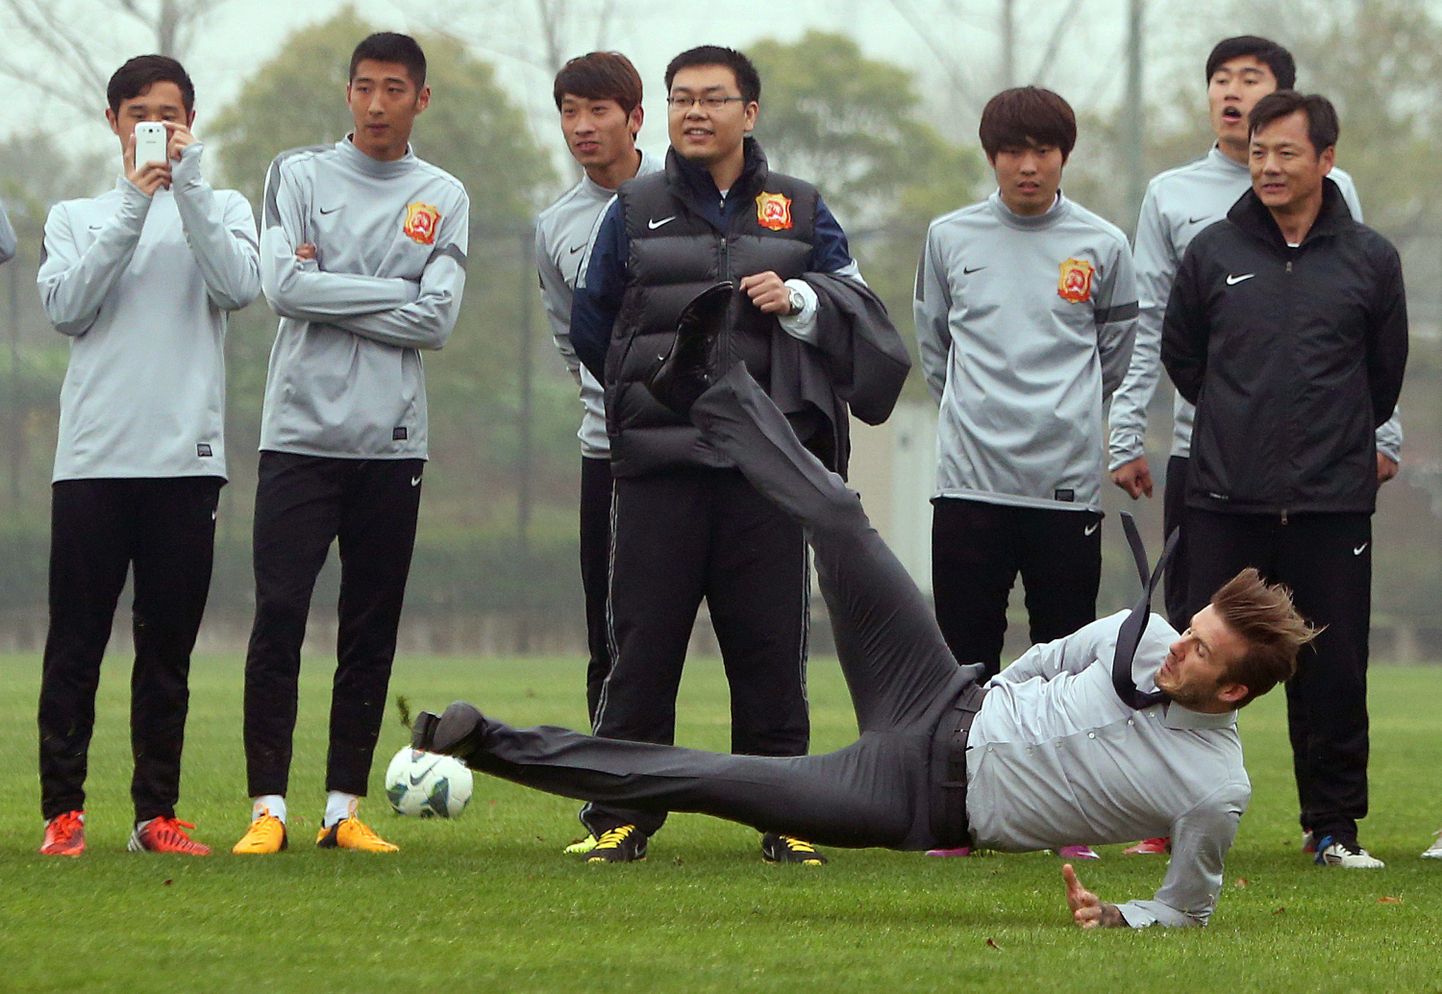 Hiinlastele karistuslöögioskust demonstreerinud David Beckham prantsatas tagumikule.